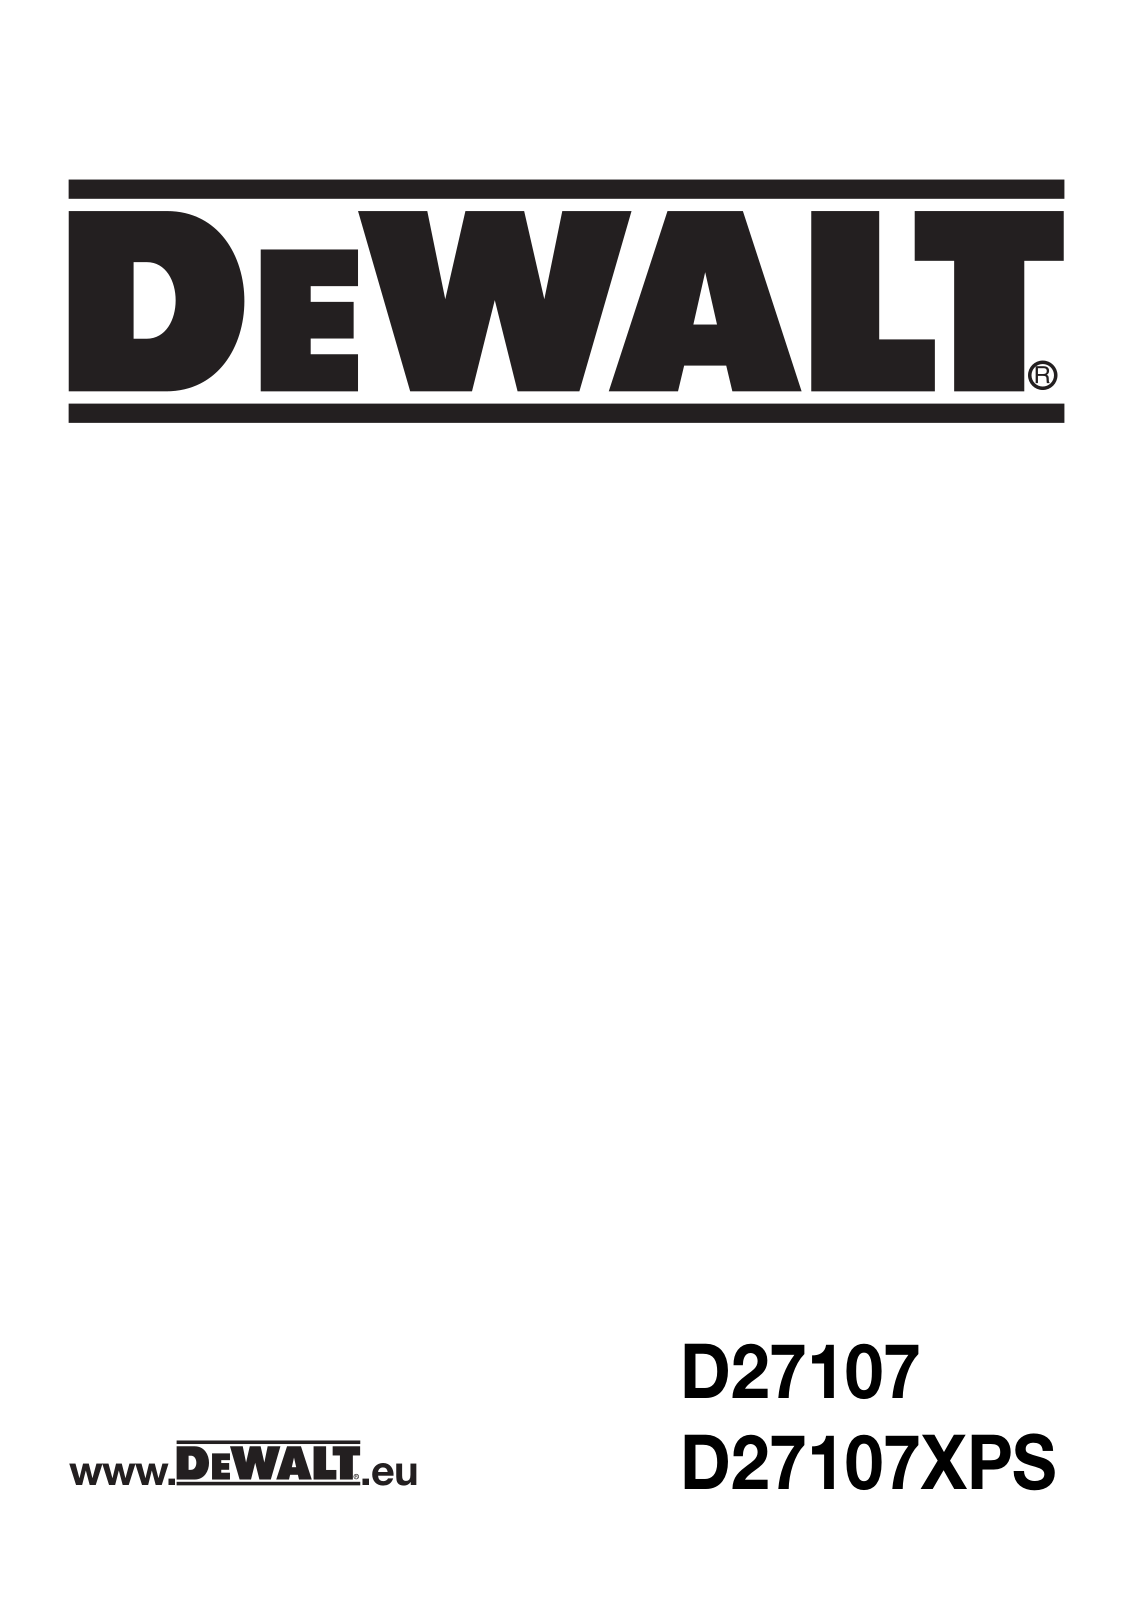 DeWalt D27107XPS operation manual